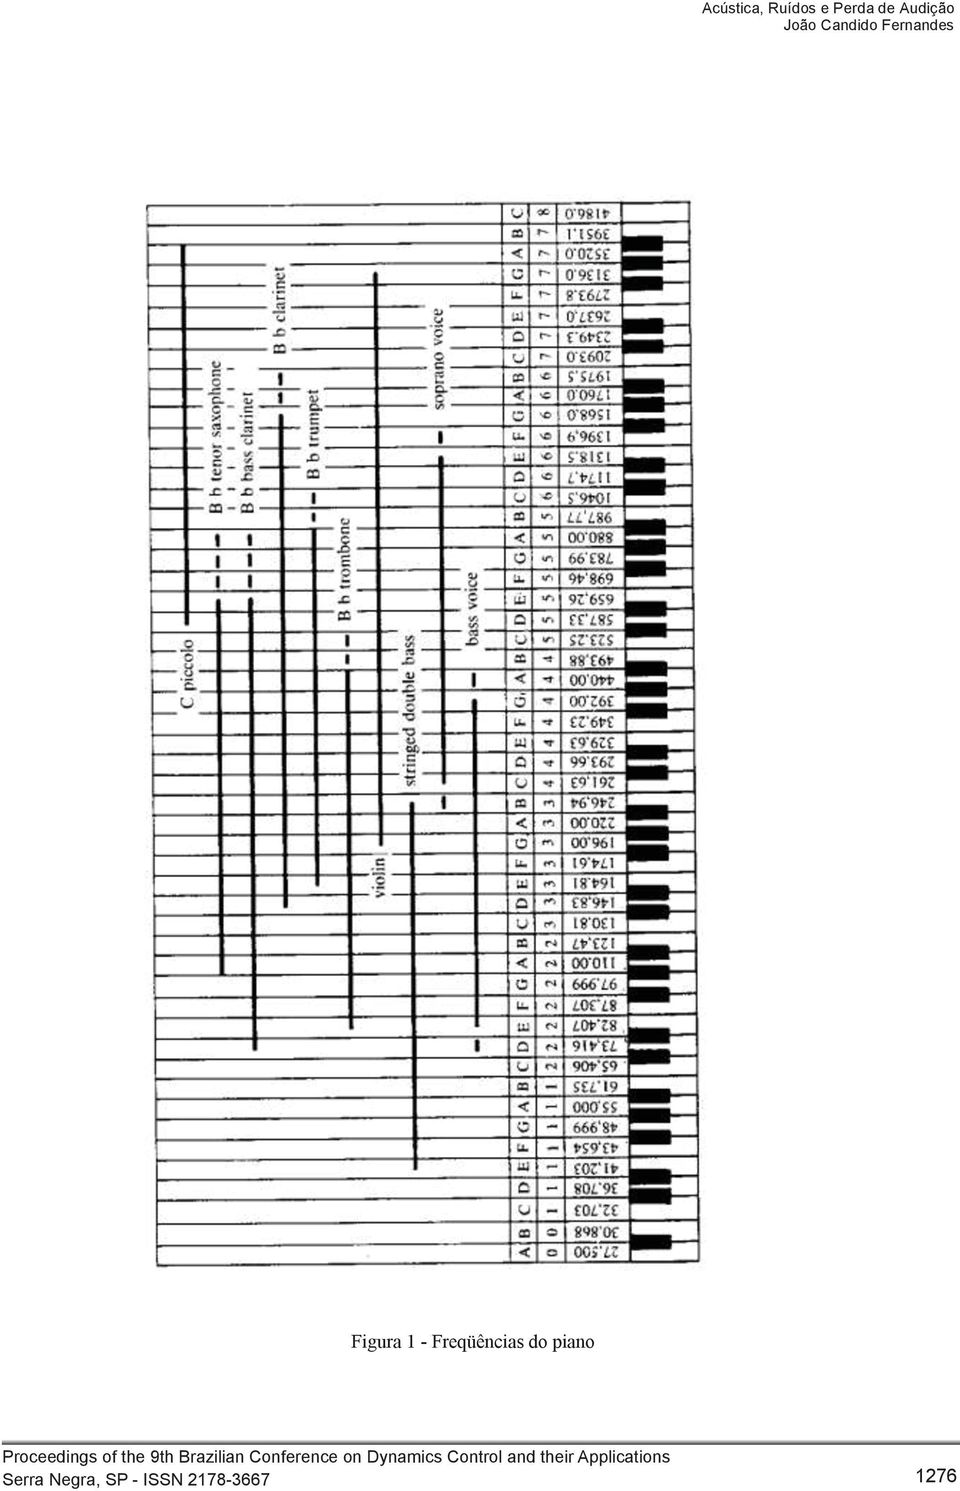 Figura 1 - Freqüências do piano